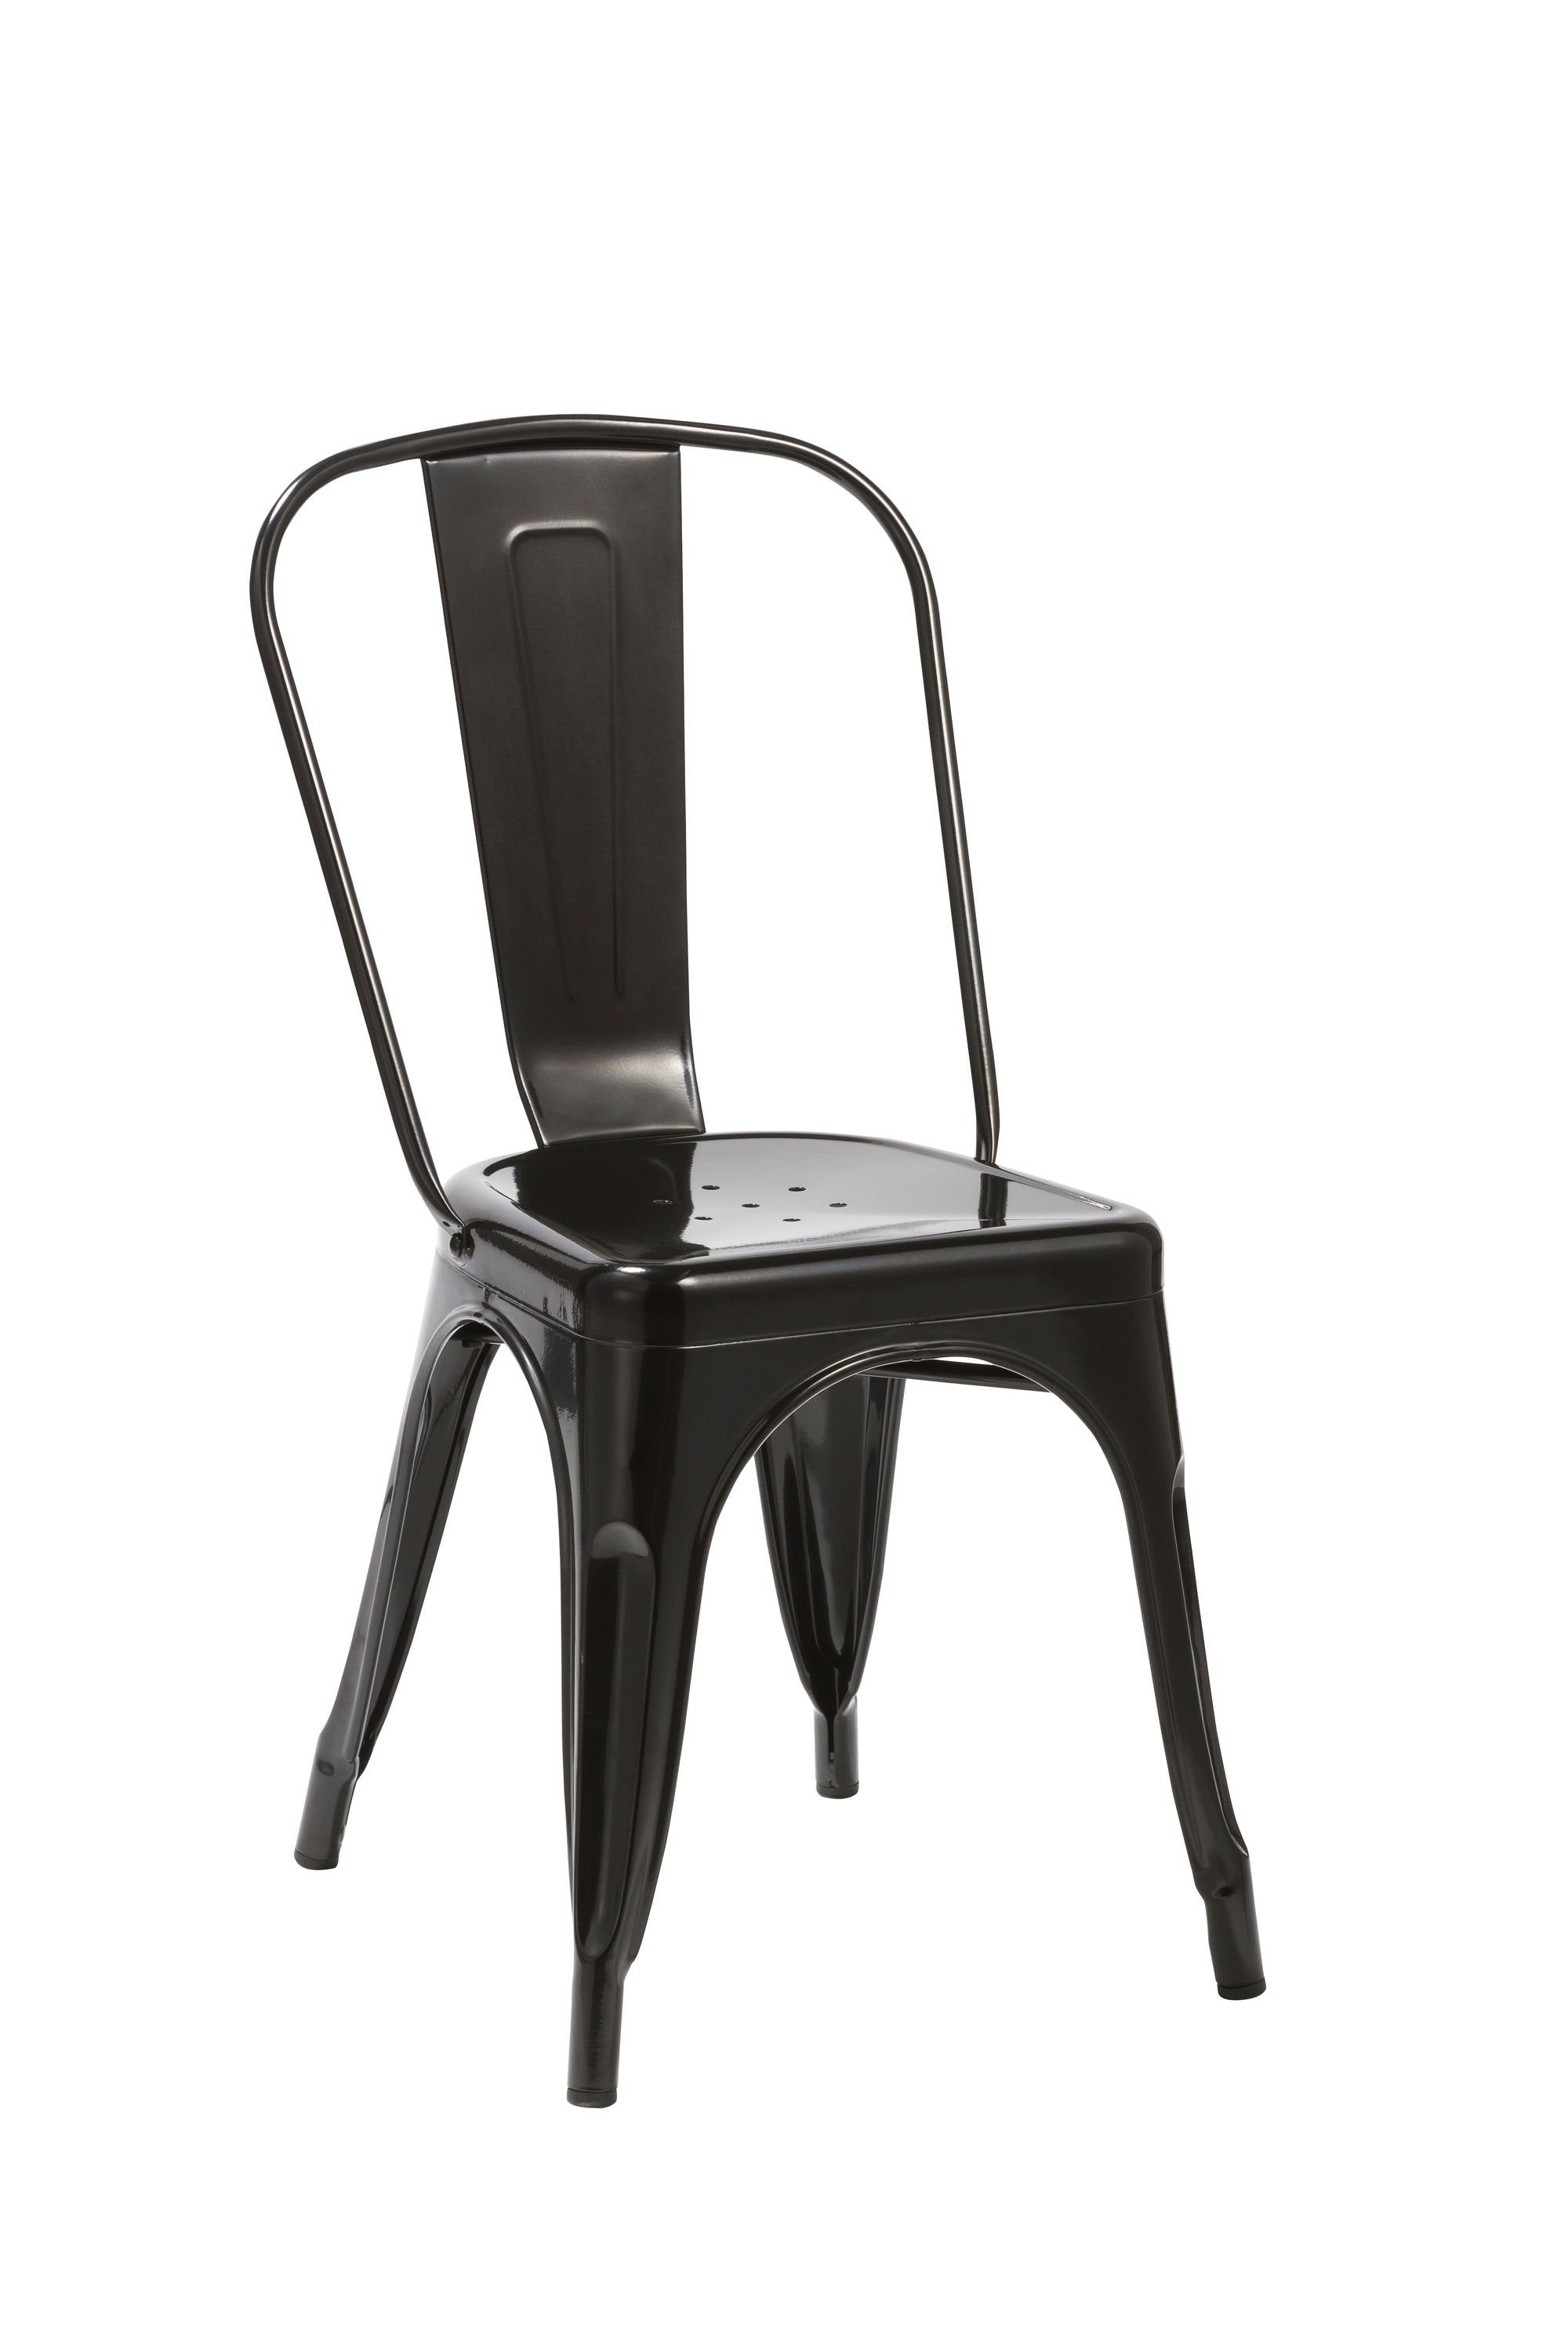 Duhome Esszimmerstuhl, Küchenstuhl Stuhl Esszimmerstuhl Schwarz METALL Sitzfläche aus aus Holz stapelbar